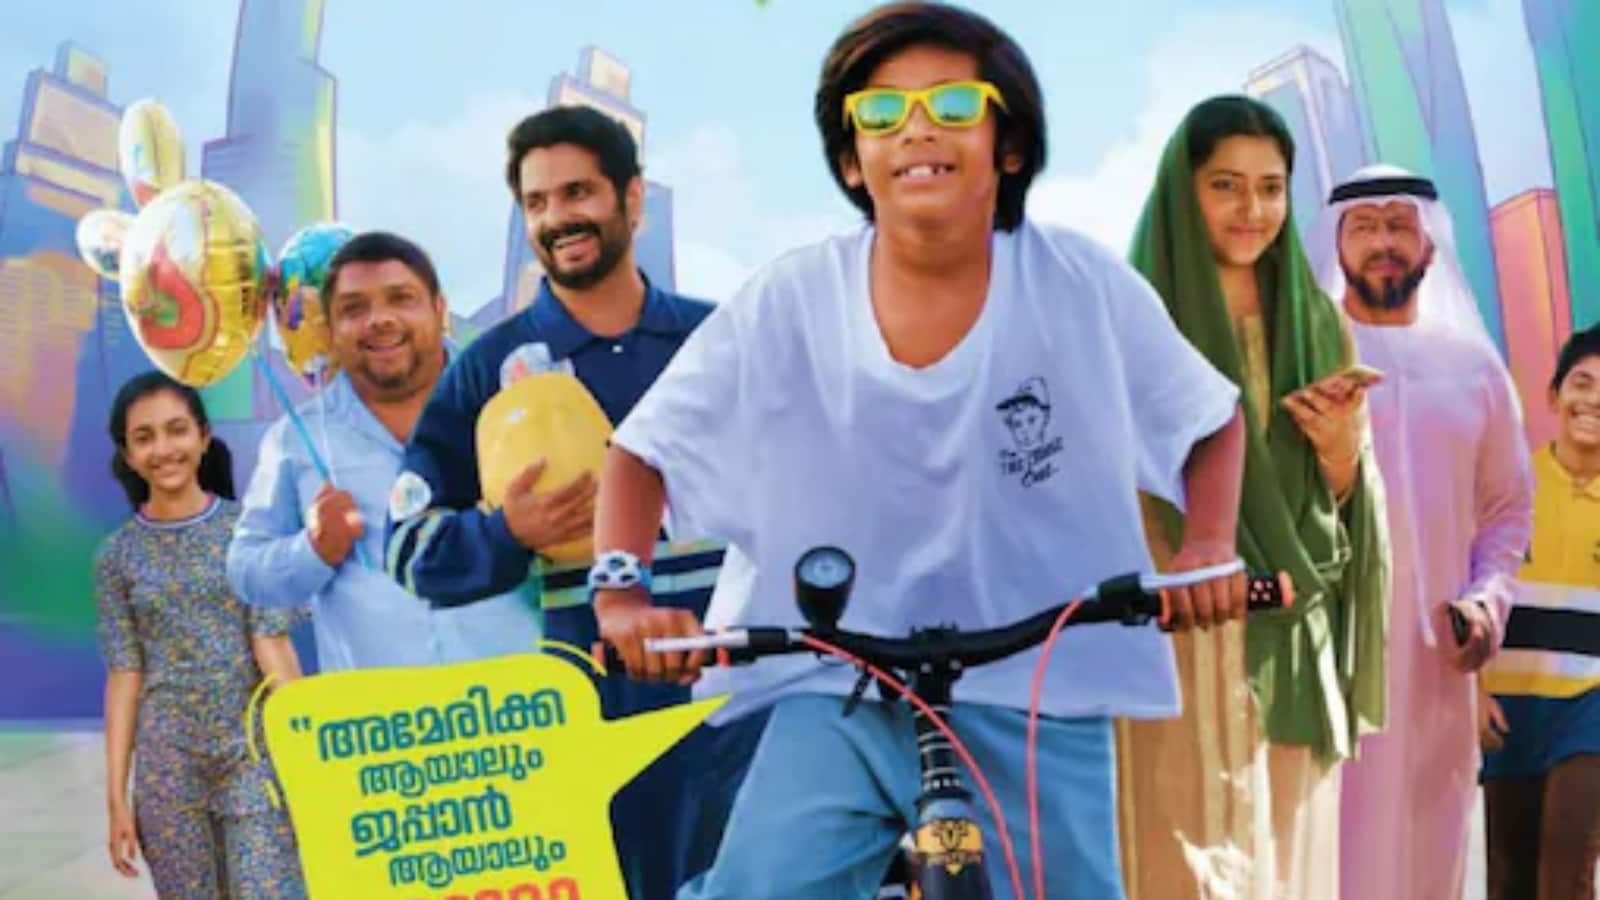 momo in dubai malayalam movie review